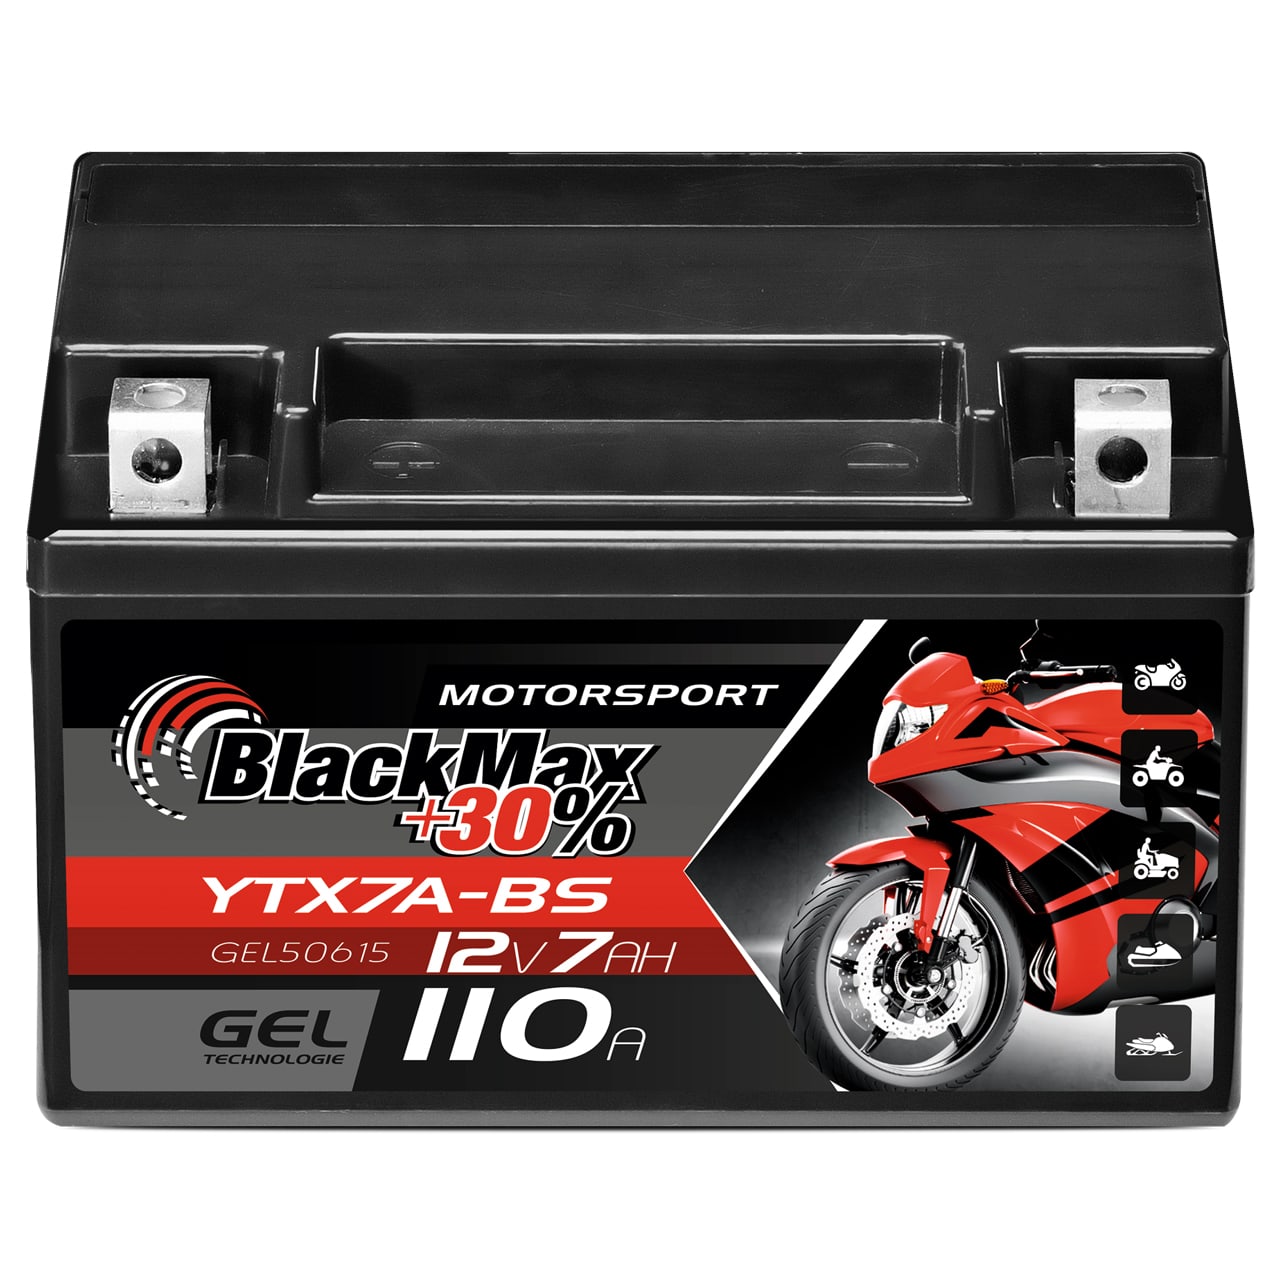 BlackMax YTX7A-BS Motorradbatterie GEL 12V 7Ah CTX7A-BS